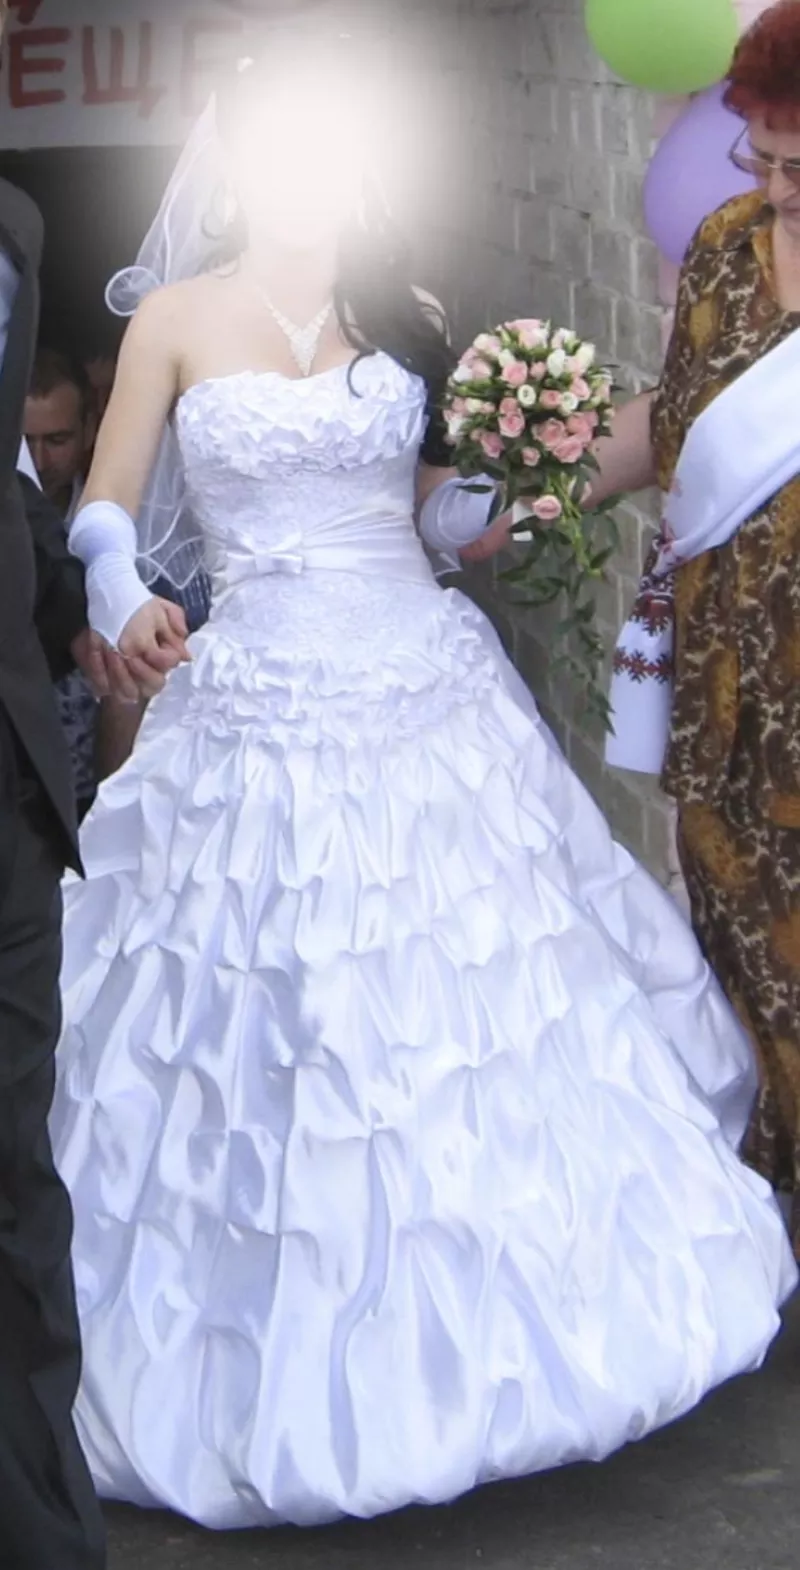 прекрасное свадебное платье